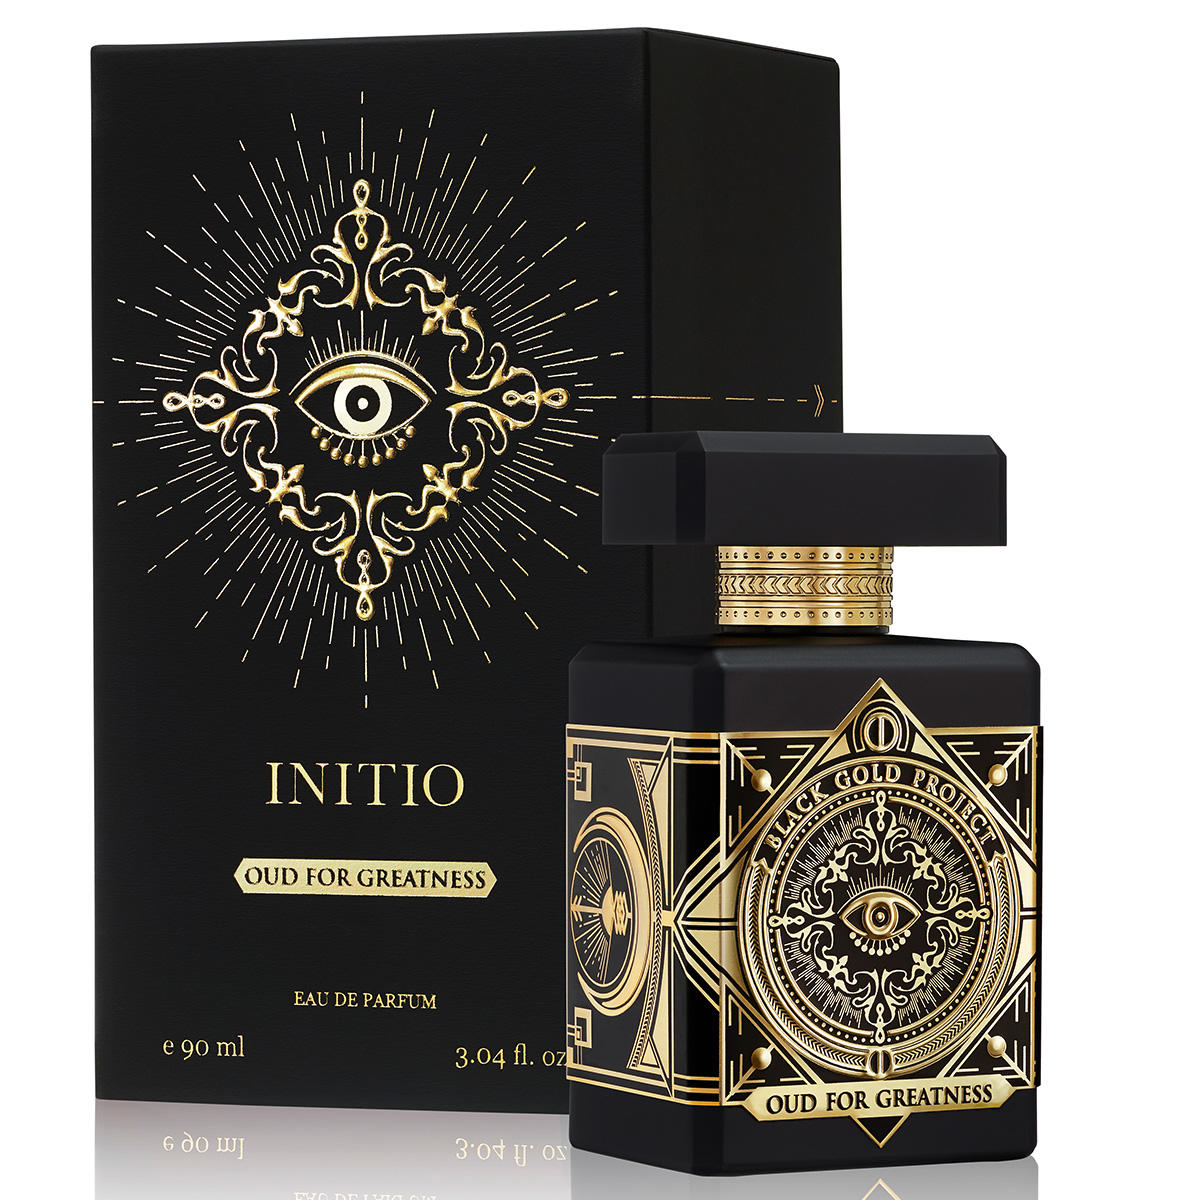 INITIO Black Gold Project Oud For Greatness Eau de Parfum 90 ml - 3